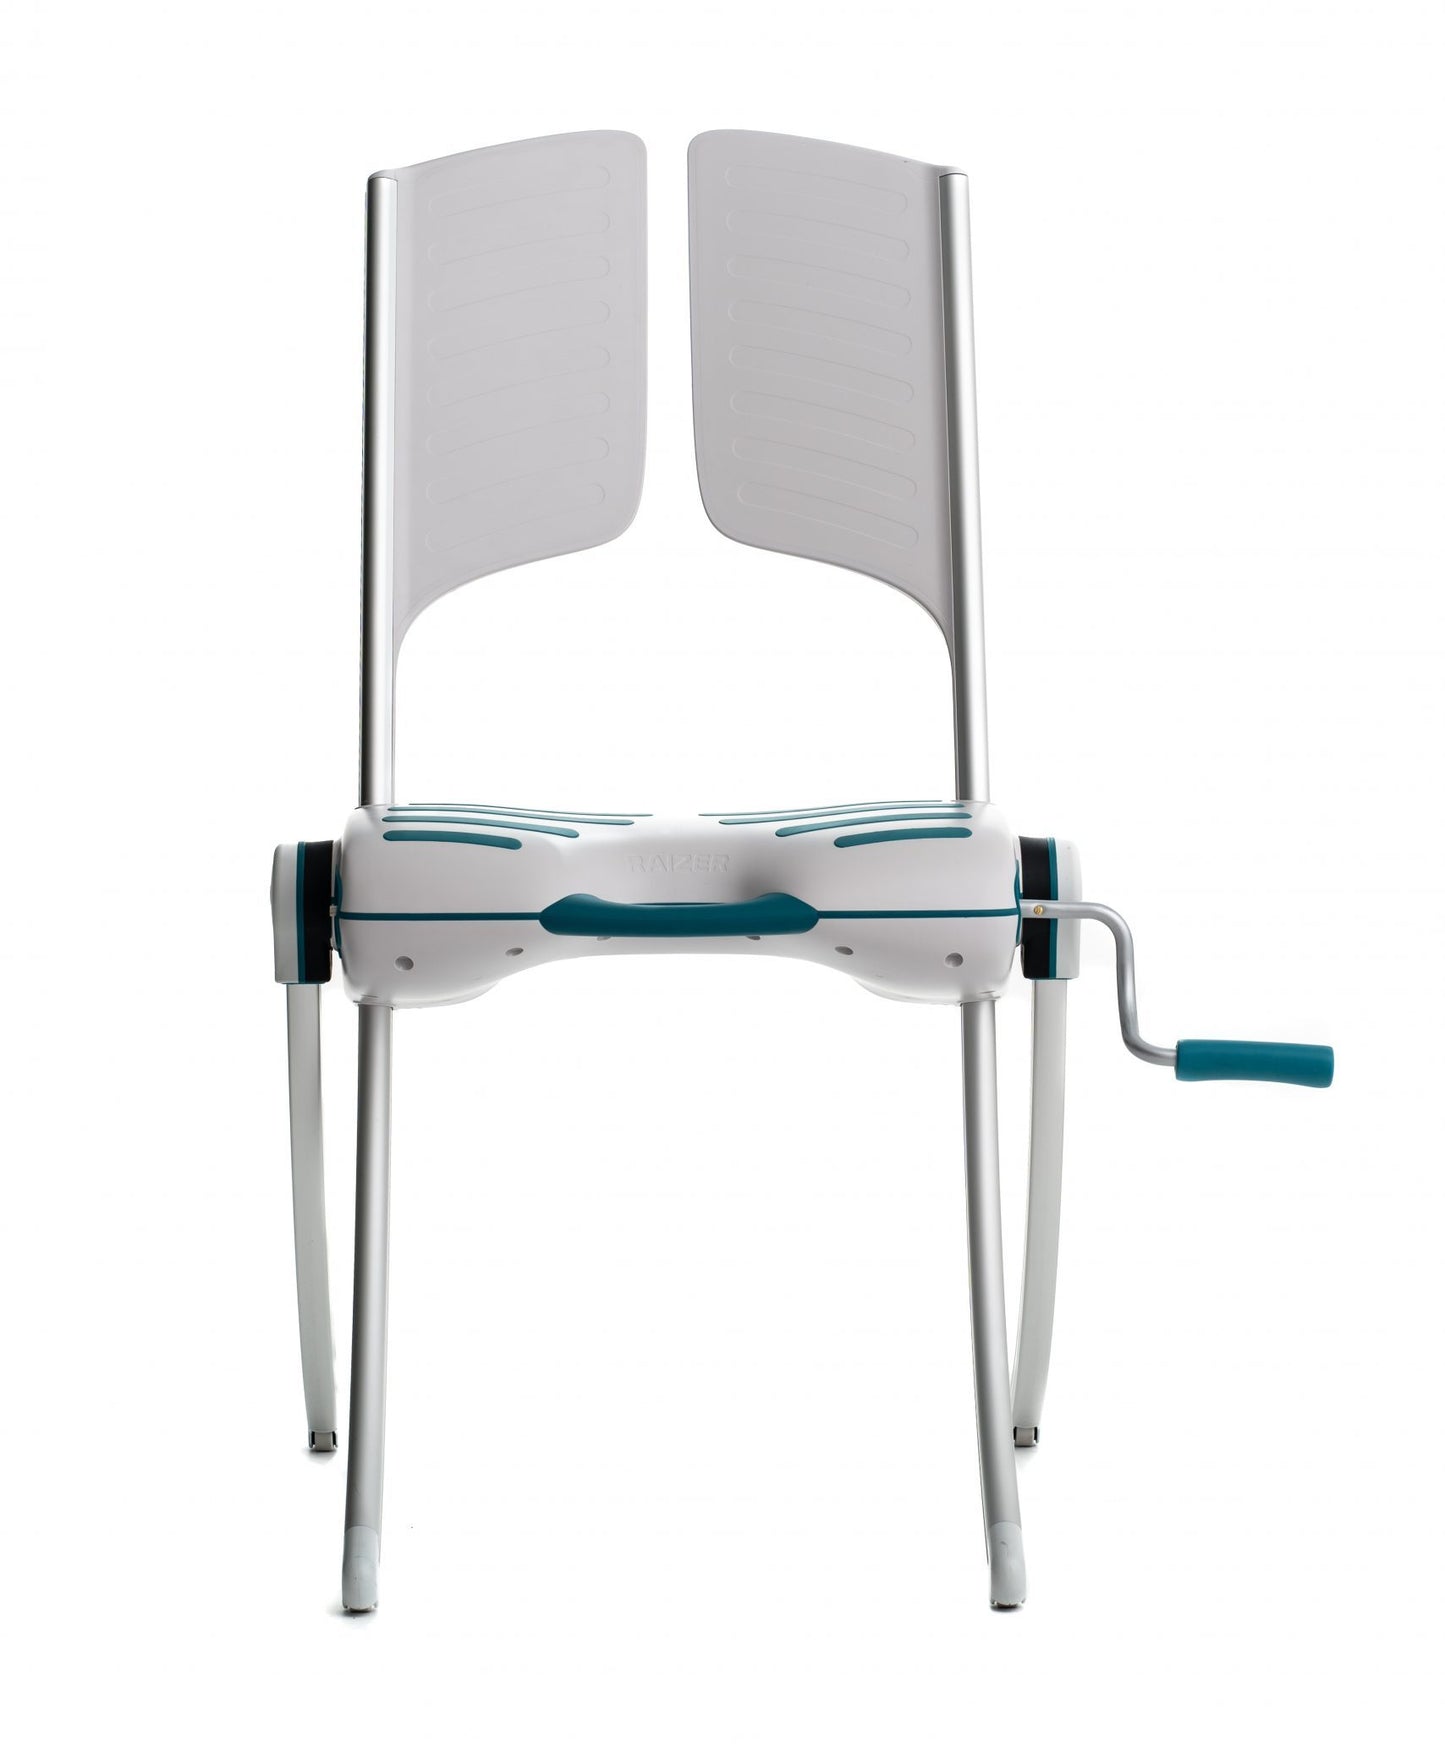 LiftUp Raizer mobile Lifting Chair